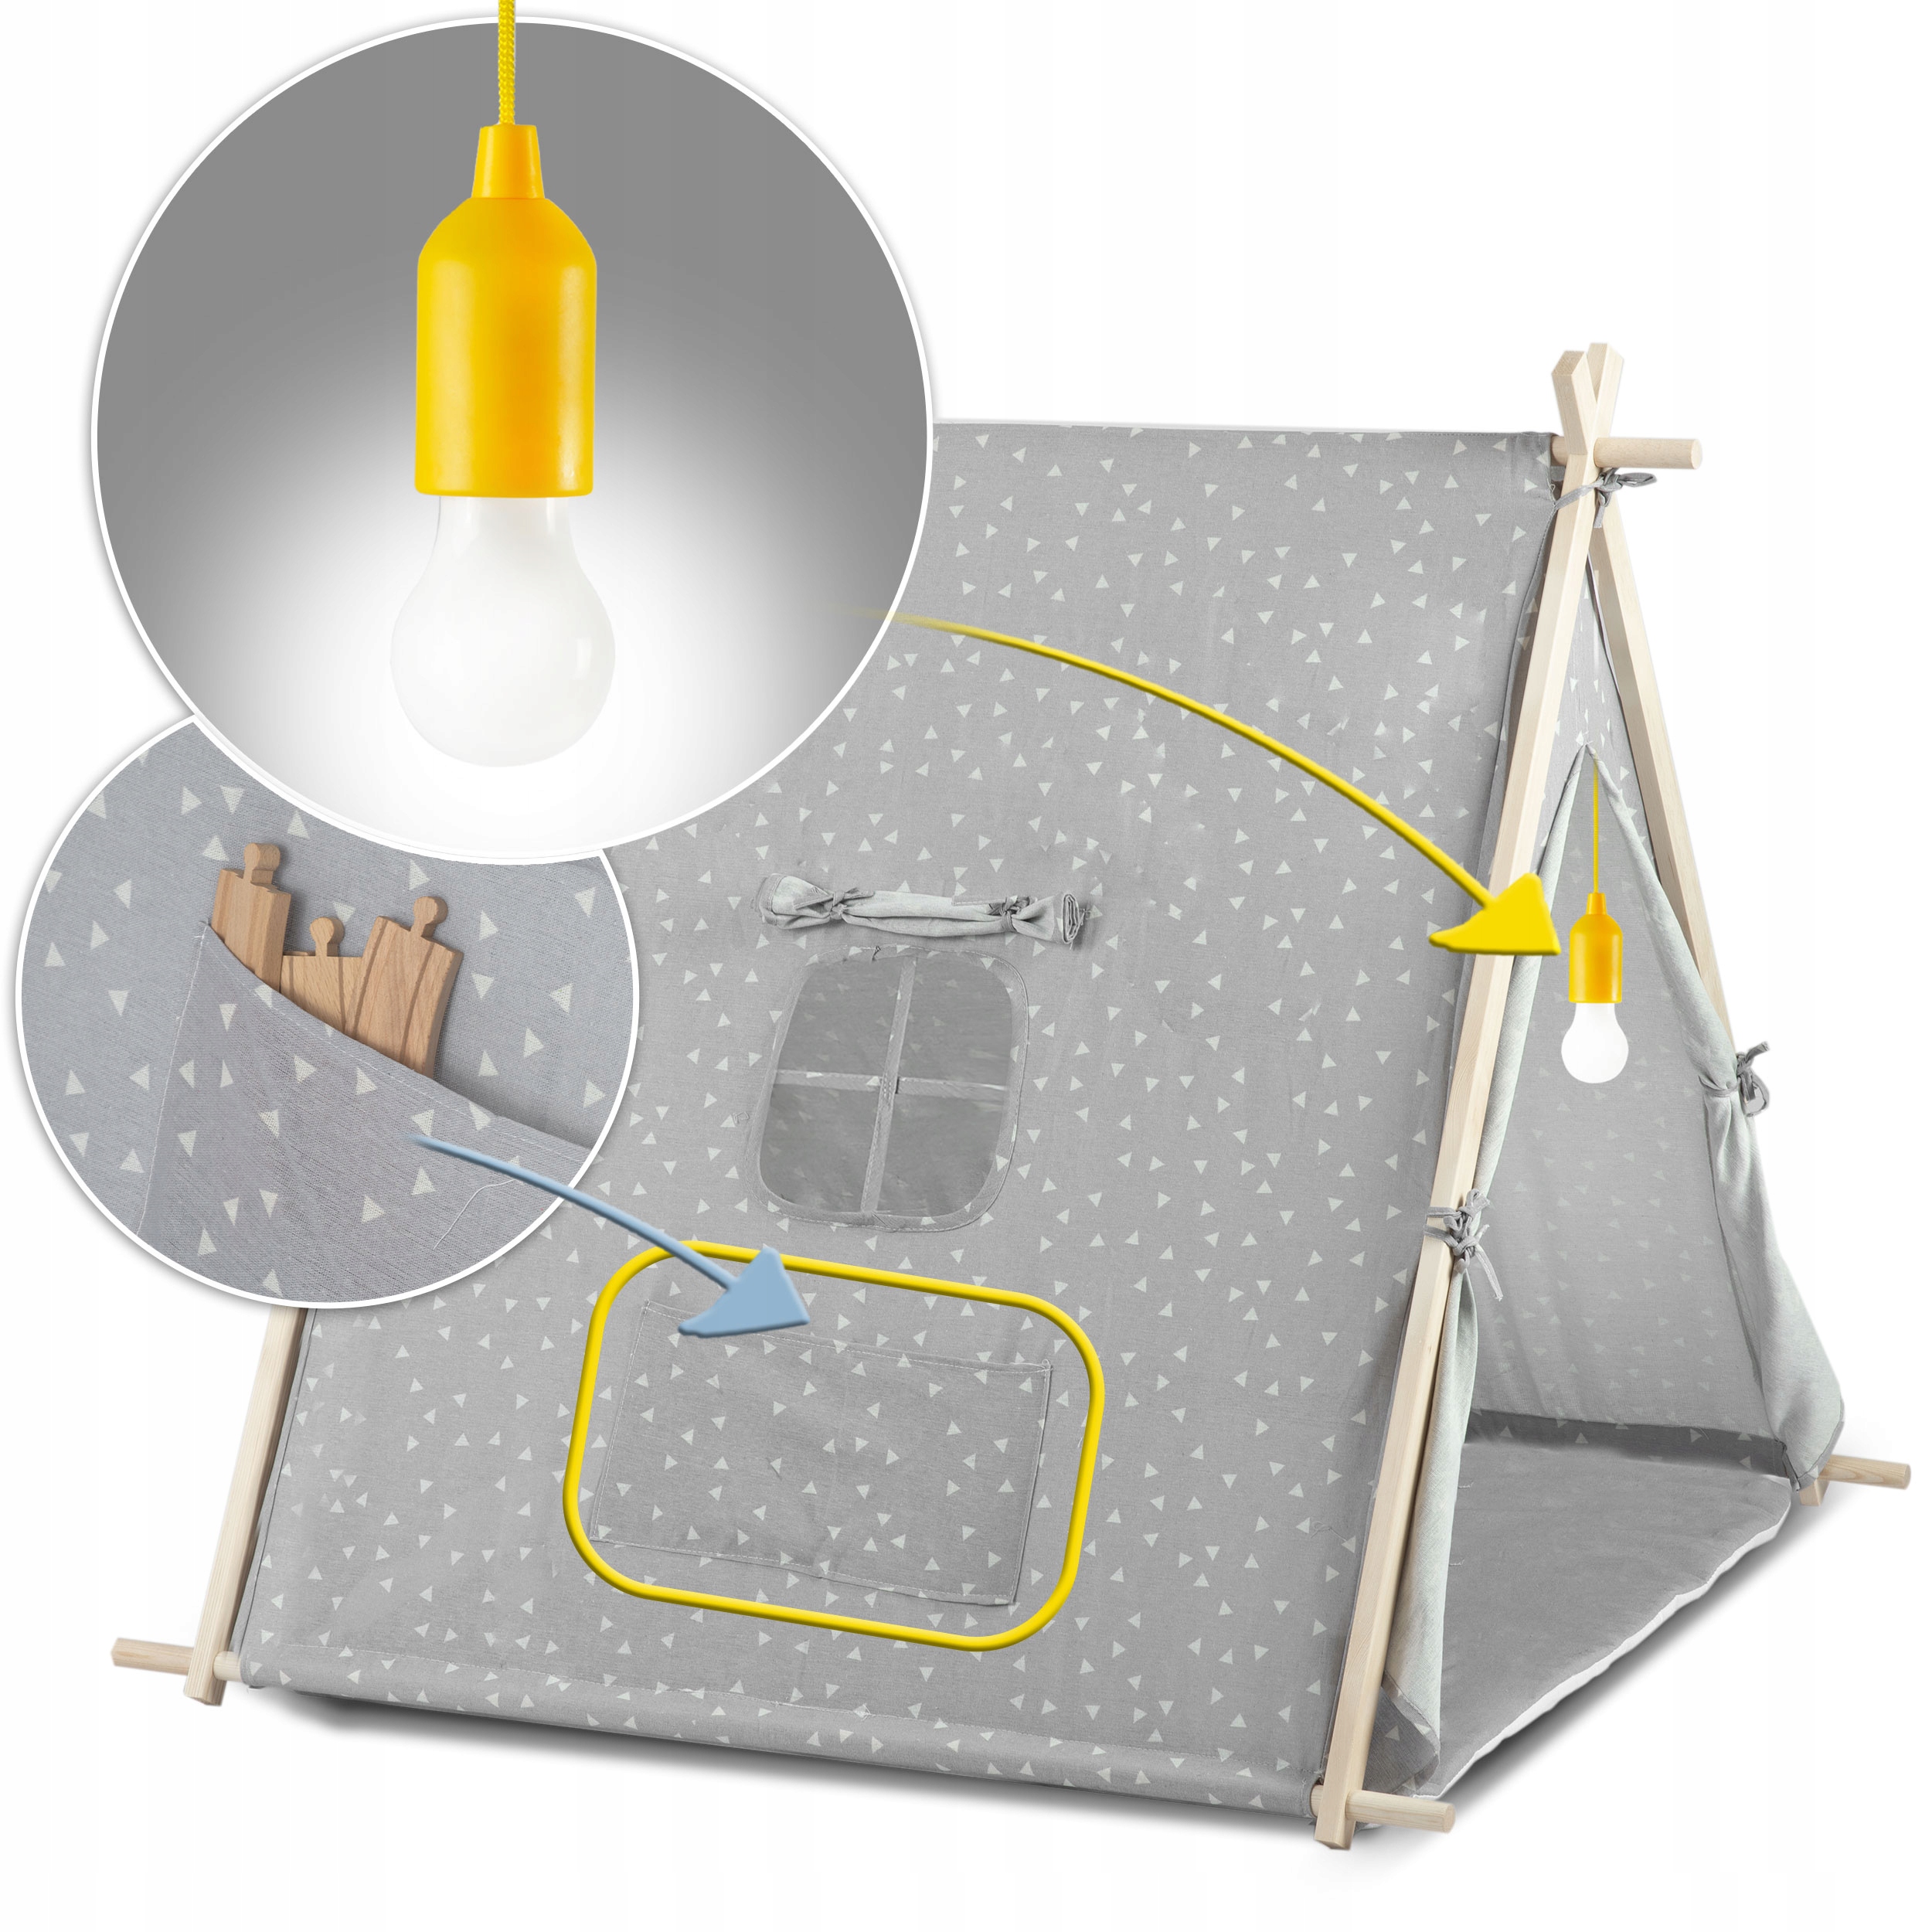 TIPI namiot dla dzieci DOMEK Poduszki LAMPKA LED Bawełna PREMIUM Nukido Waga produktu z opakowaniem jednostkowym 4 kg